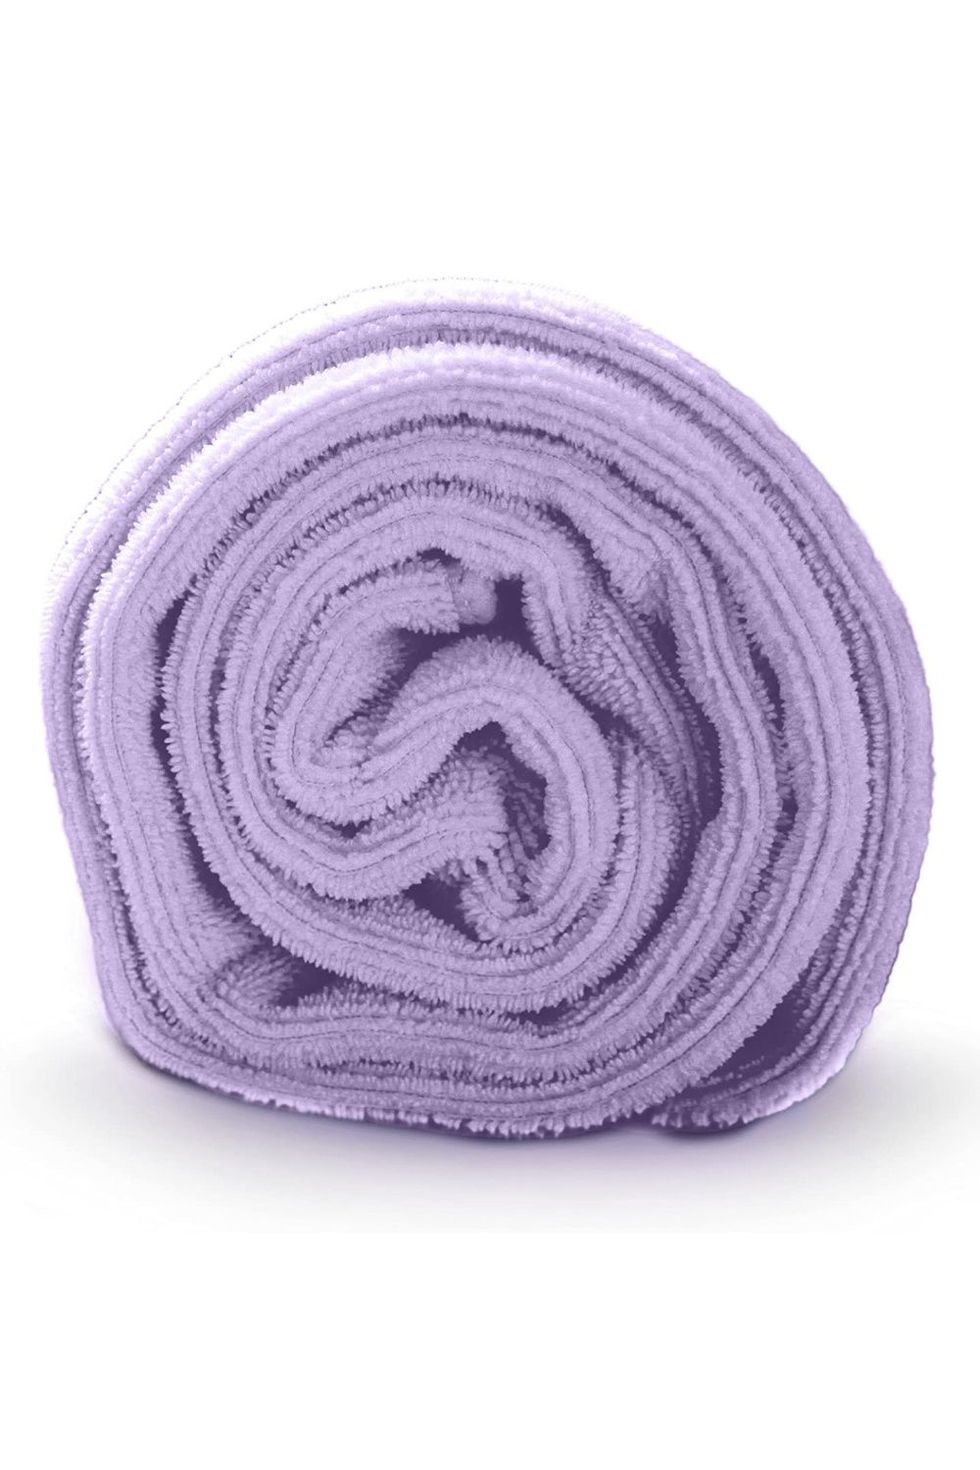 2 Pk XL Microfiber Hair Towels 24 x 48 Anti Frizz Bath Towel Light Pink  NEW